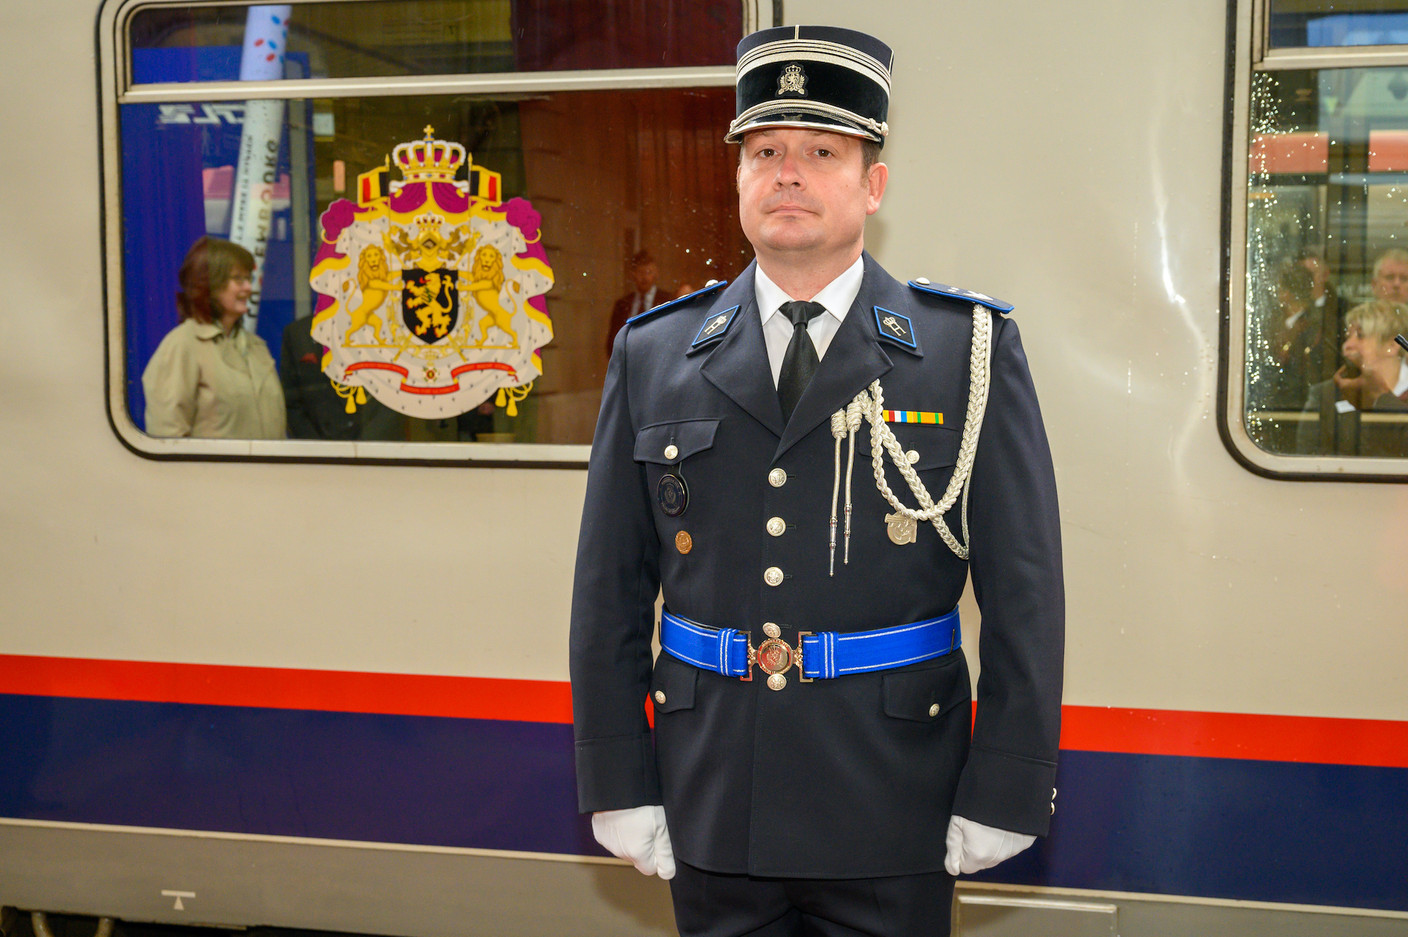 Le train conduisant les souverains et la délégation à Luxembourg est parti mardi matin de Bruxelles. (Photo: SIP/Charles Caratini)